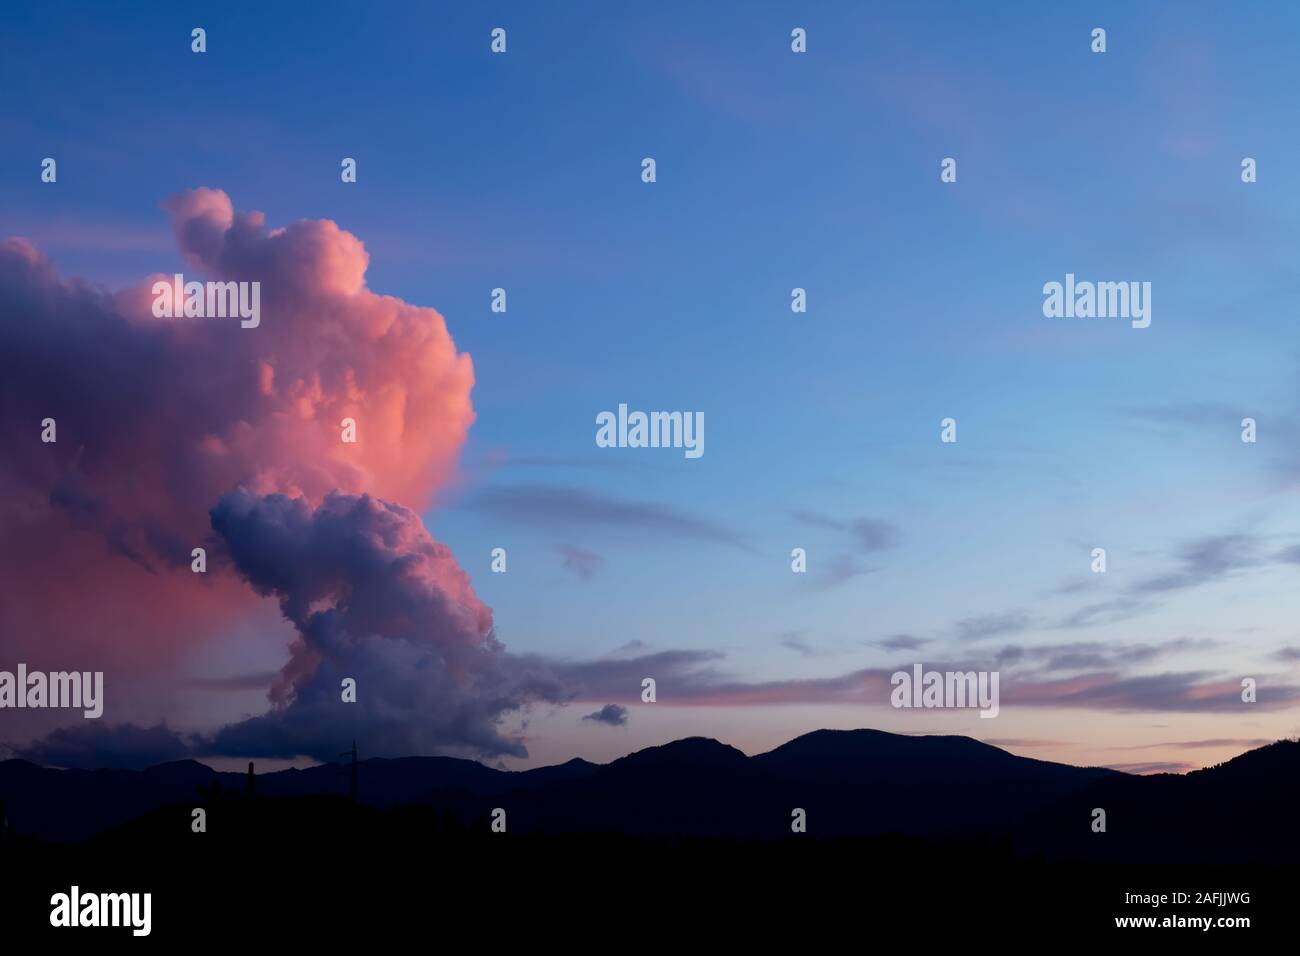 Cumulonimbus, nuage de grêle au cours de la Lunigiana, en Italie. Décembre 2019. La colonne se dressant au coucher du soleil avec ciel rouge. Banque D'Images